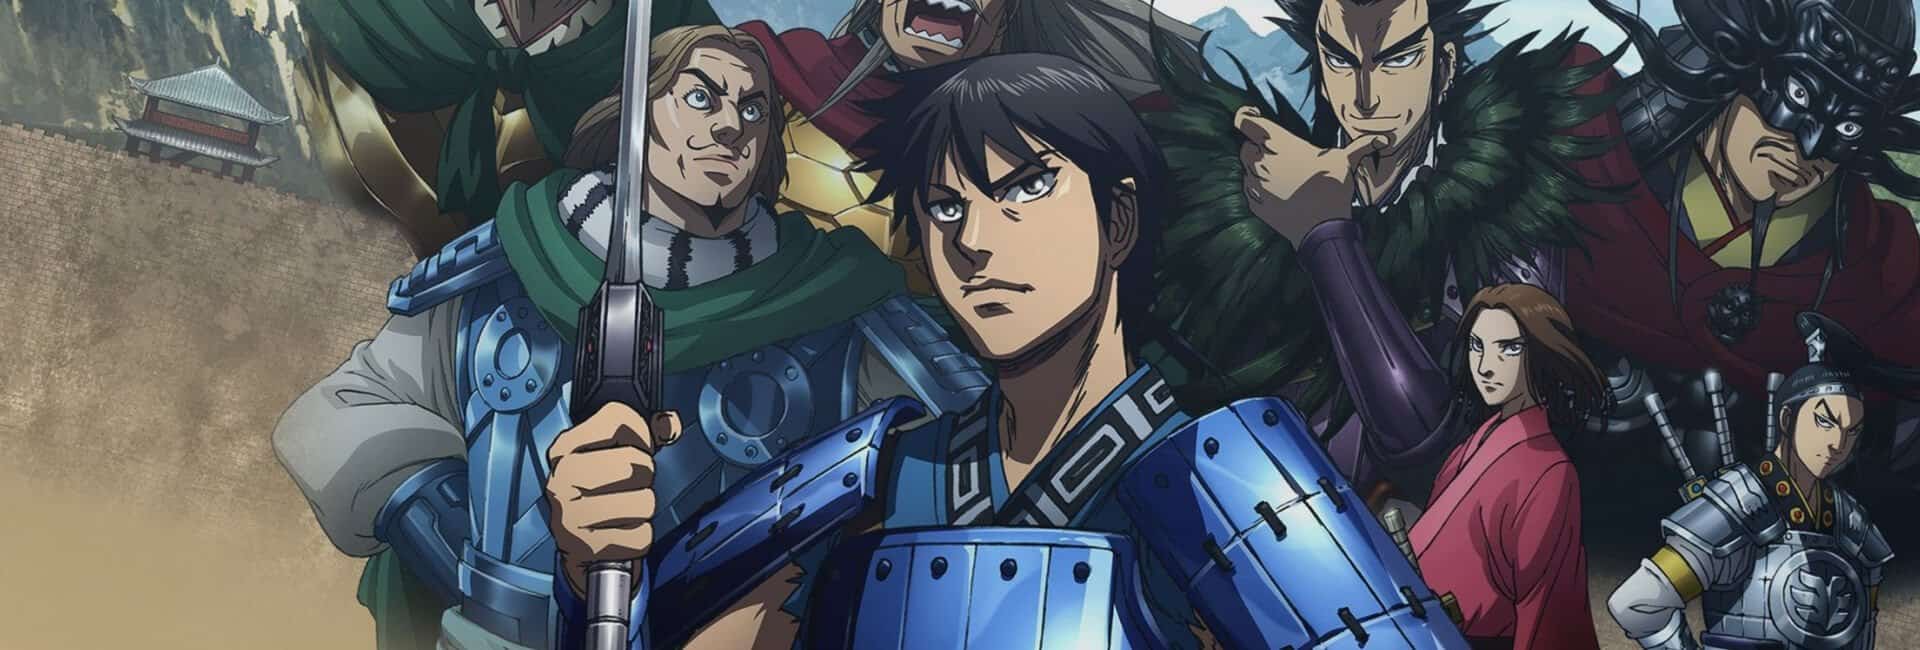 Personagens do anime kingdom na capa com armaduras e espadas